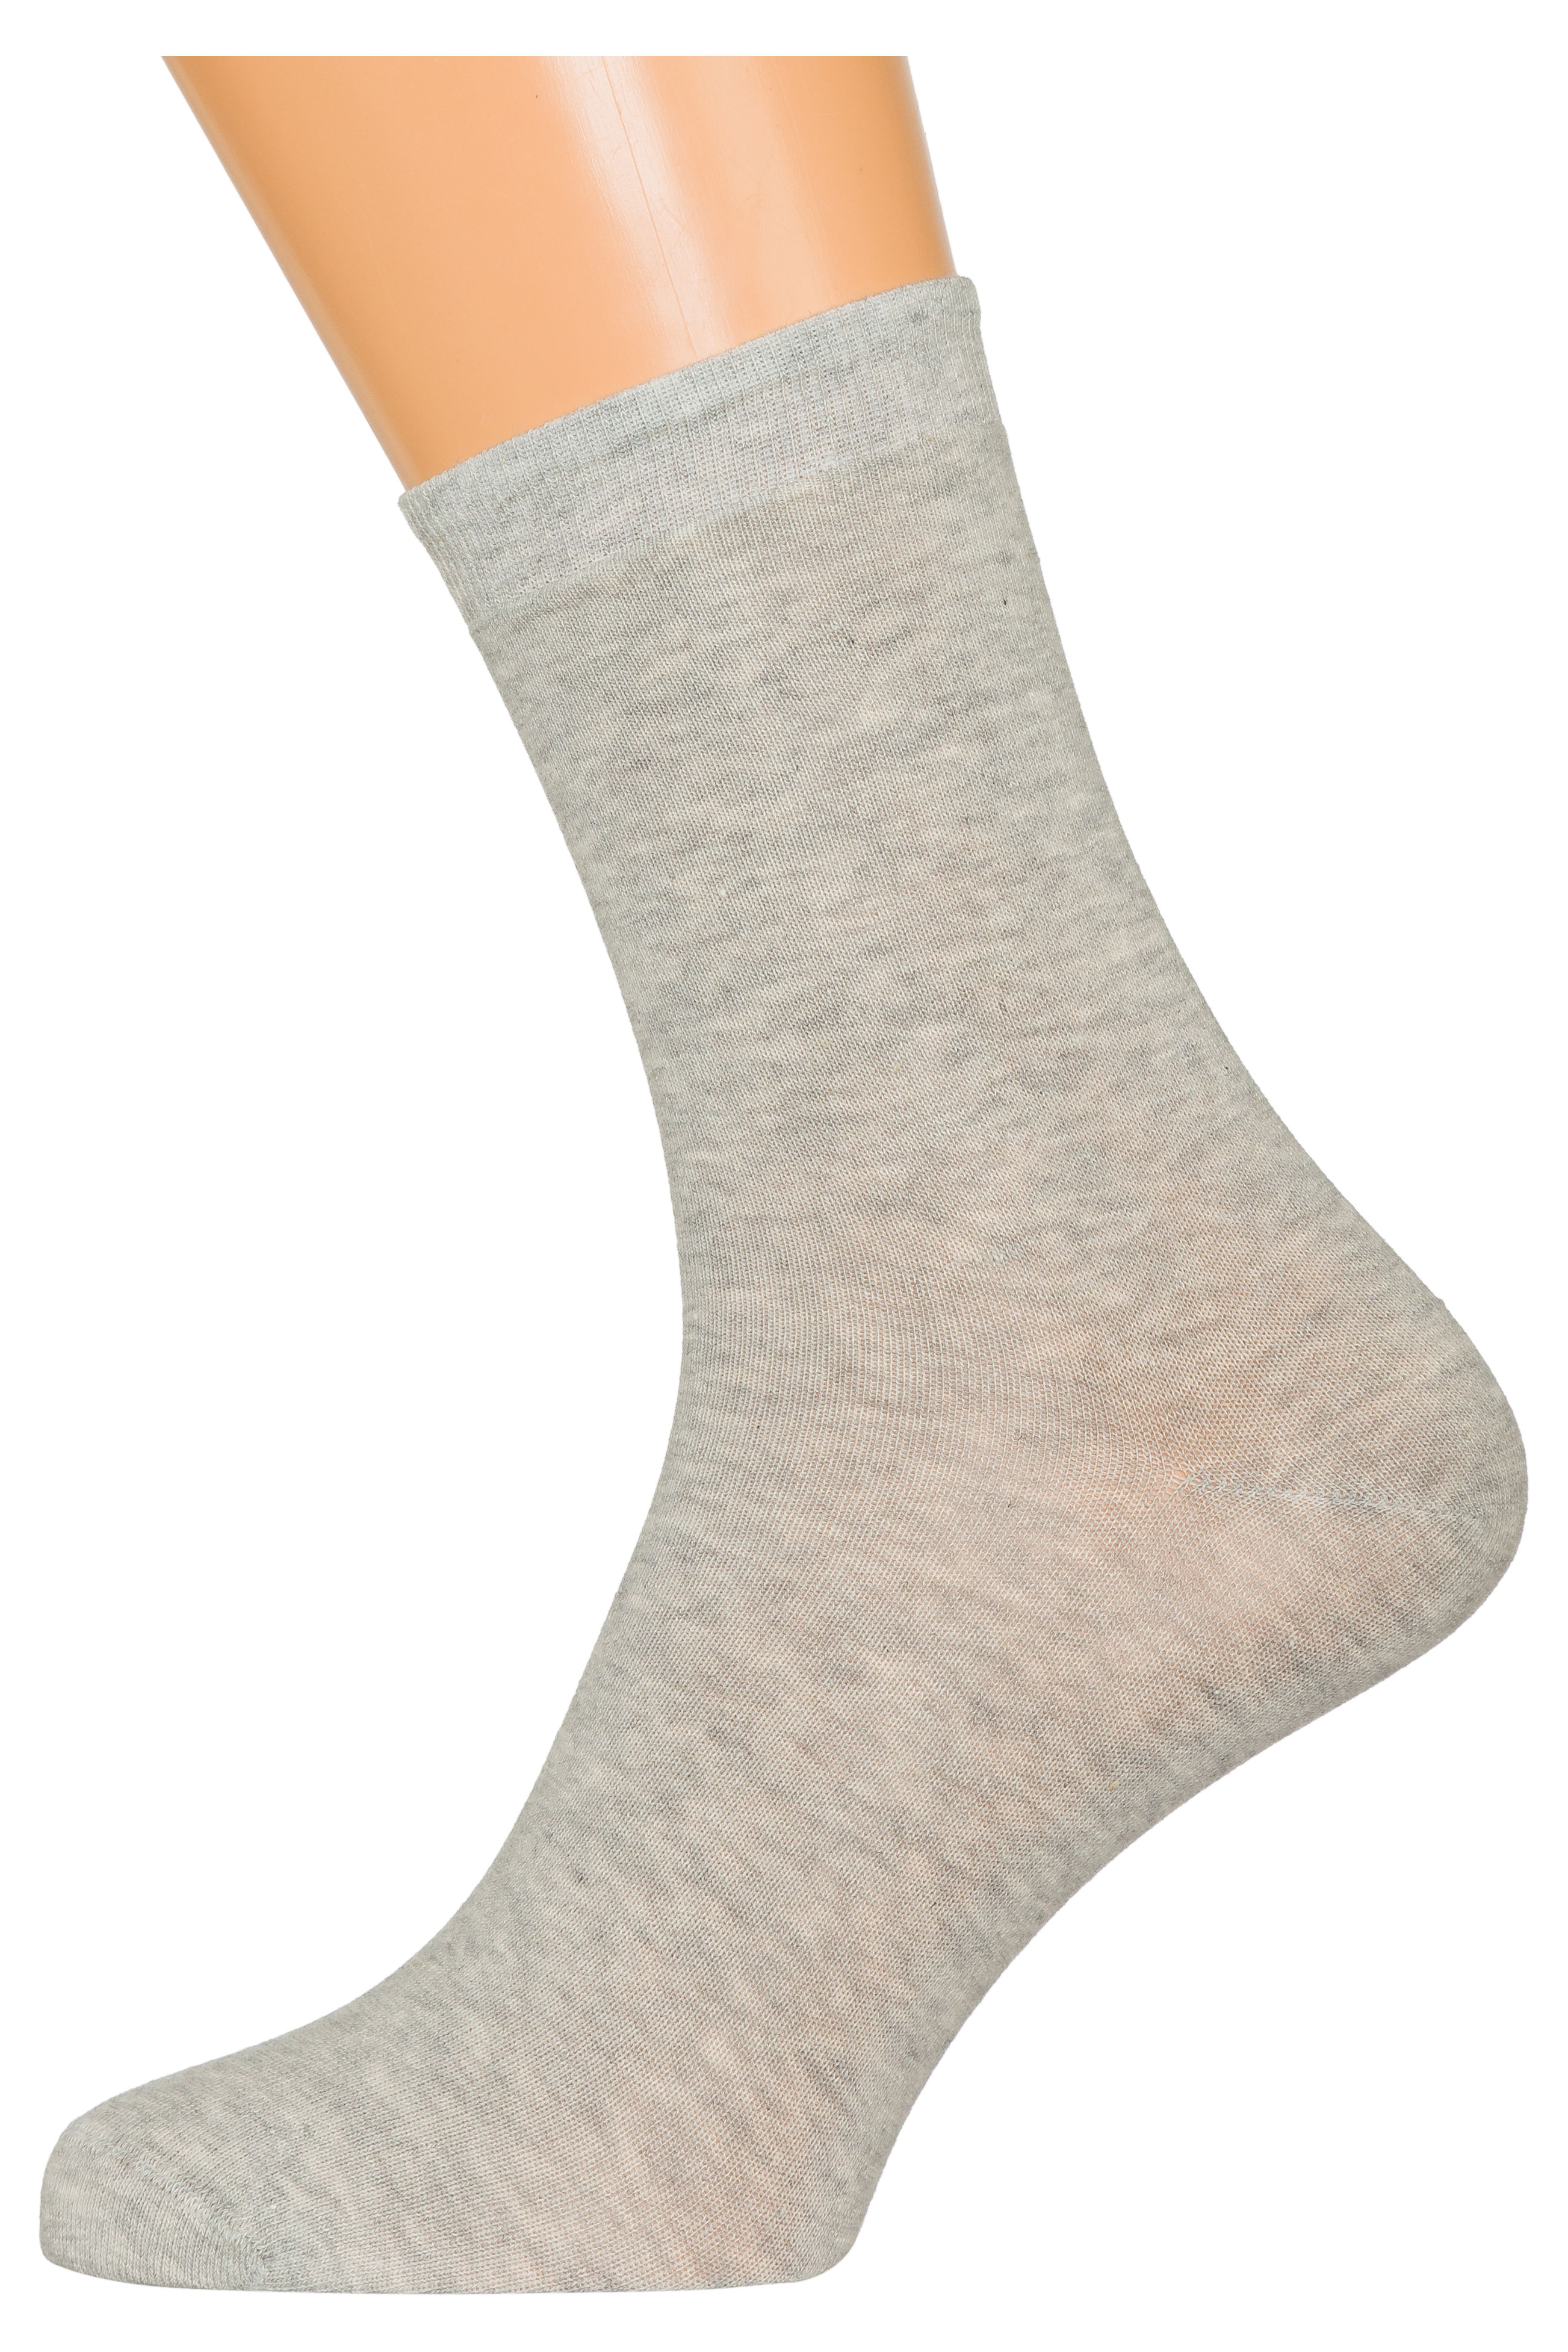 Носки мужские «ХОХ» Х-3R15 светло-серые, размер 25